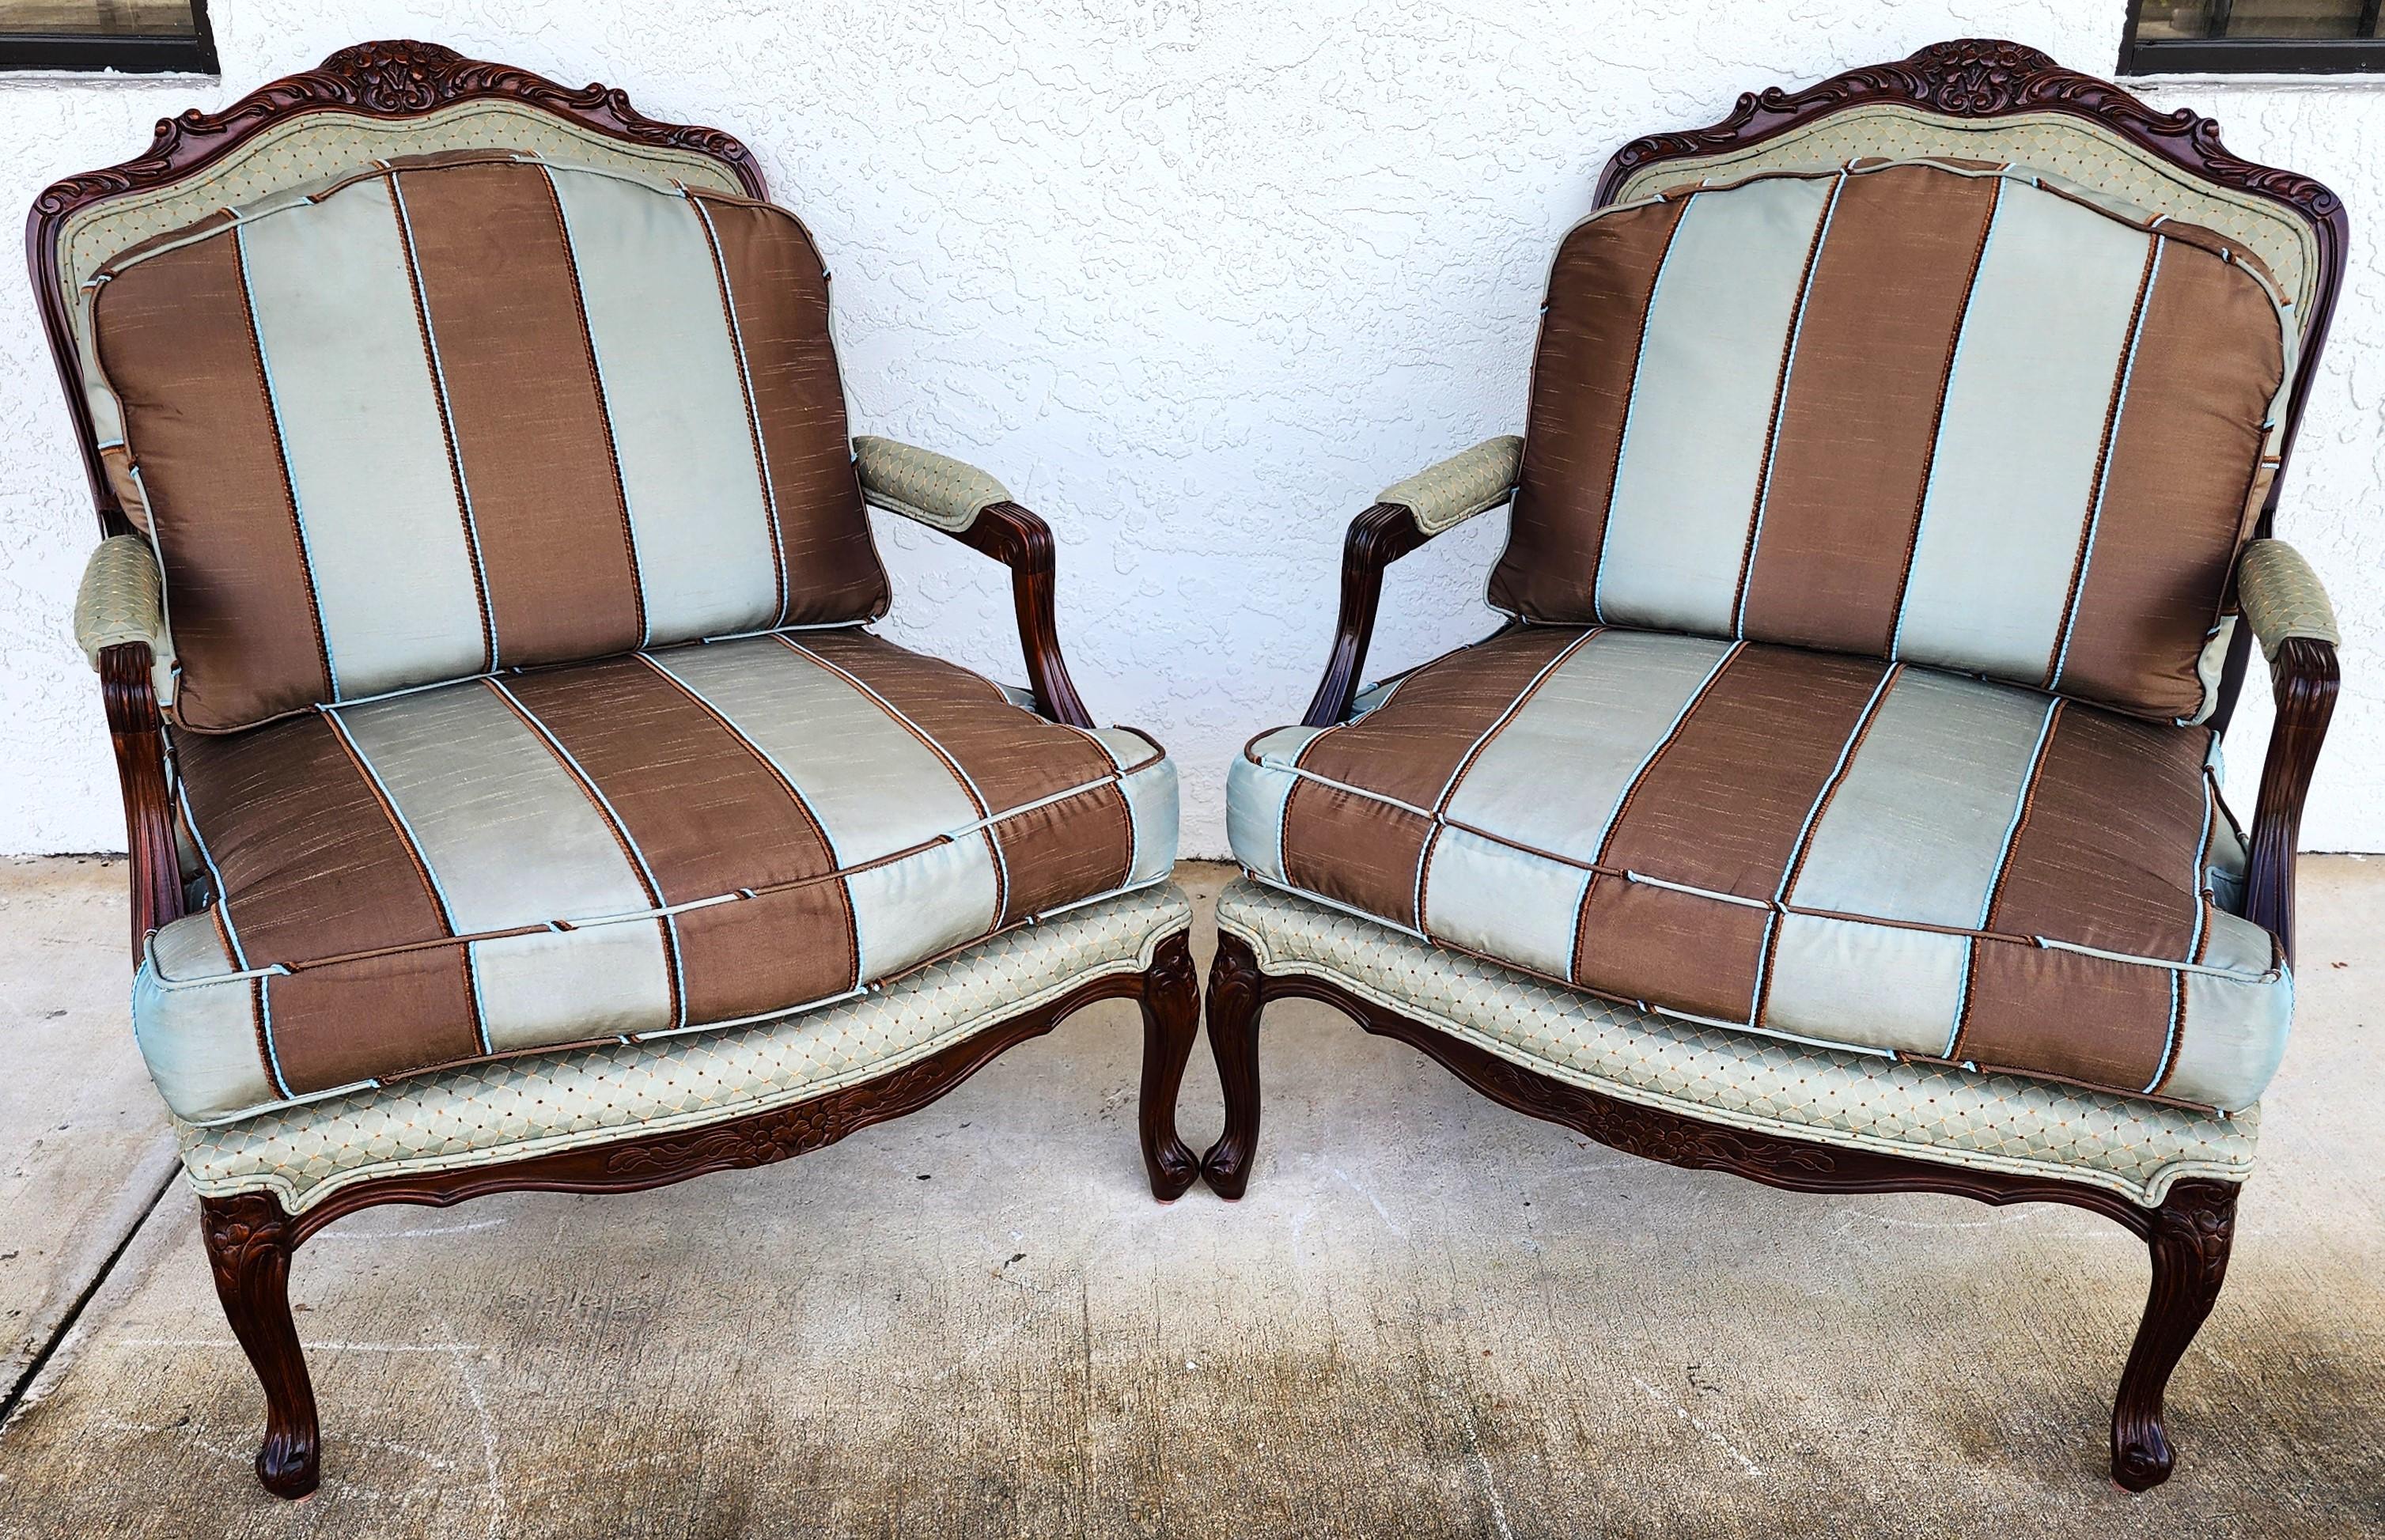 Pour une description complète de l'article, cliquez sur CONTINUER LA LECTURE au bas de cette page.

Offrant l'une de nos récentes acquisitions de meubles fins Palm Beach Estate de A
Paire de chaises longues vintage françaises de style Louis XV 
Les